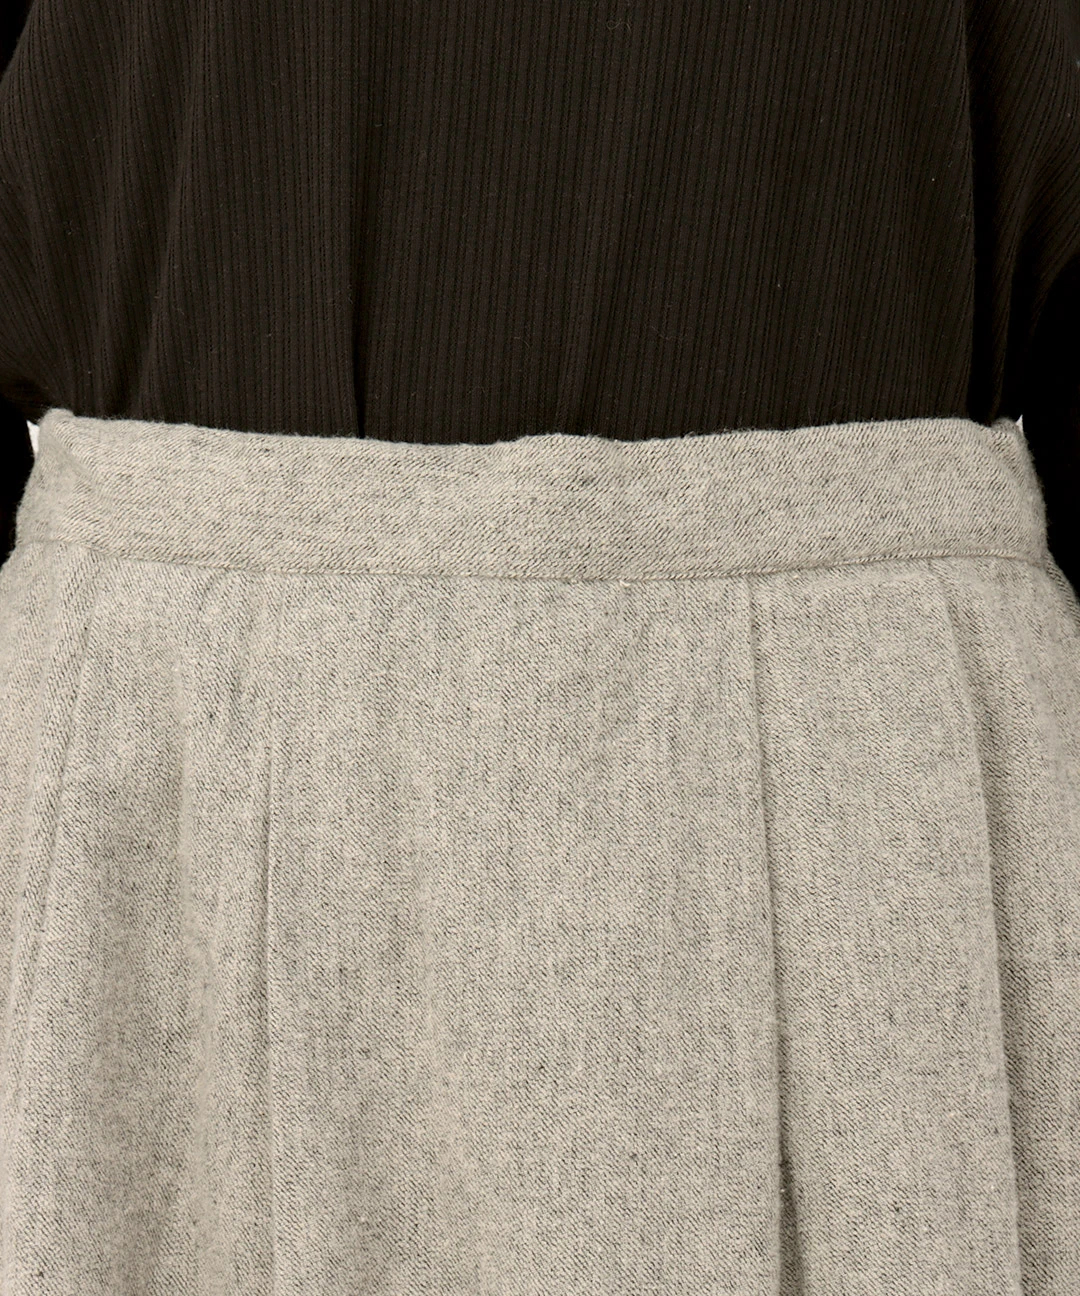 Shanti Shanti メランジ起毛ツイルスカート【WEB限定】 / スカート